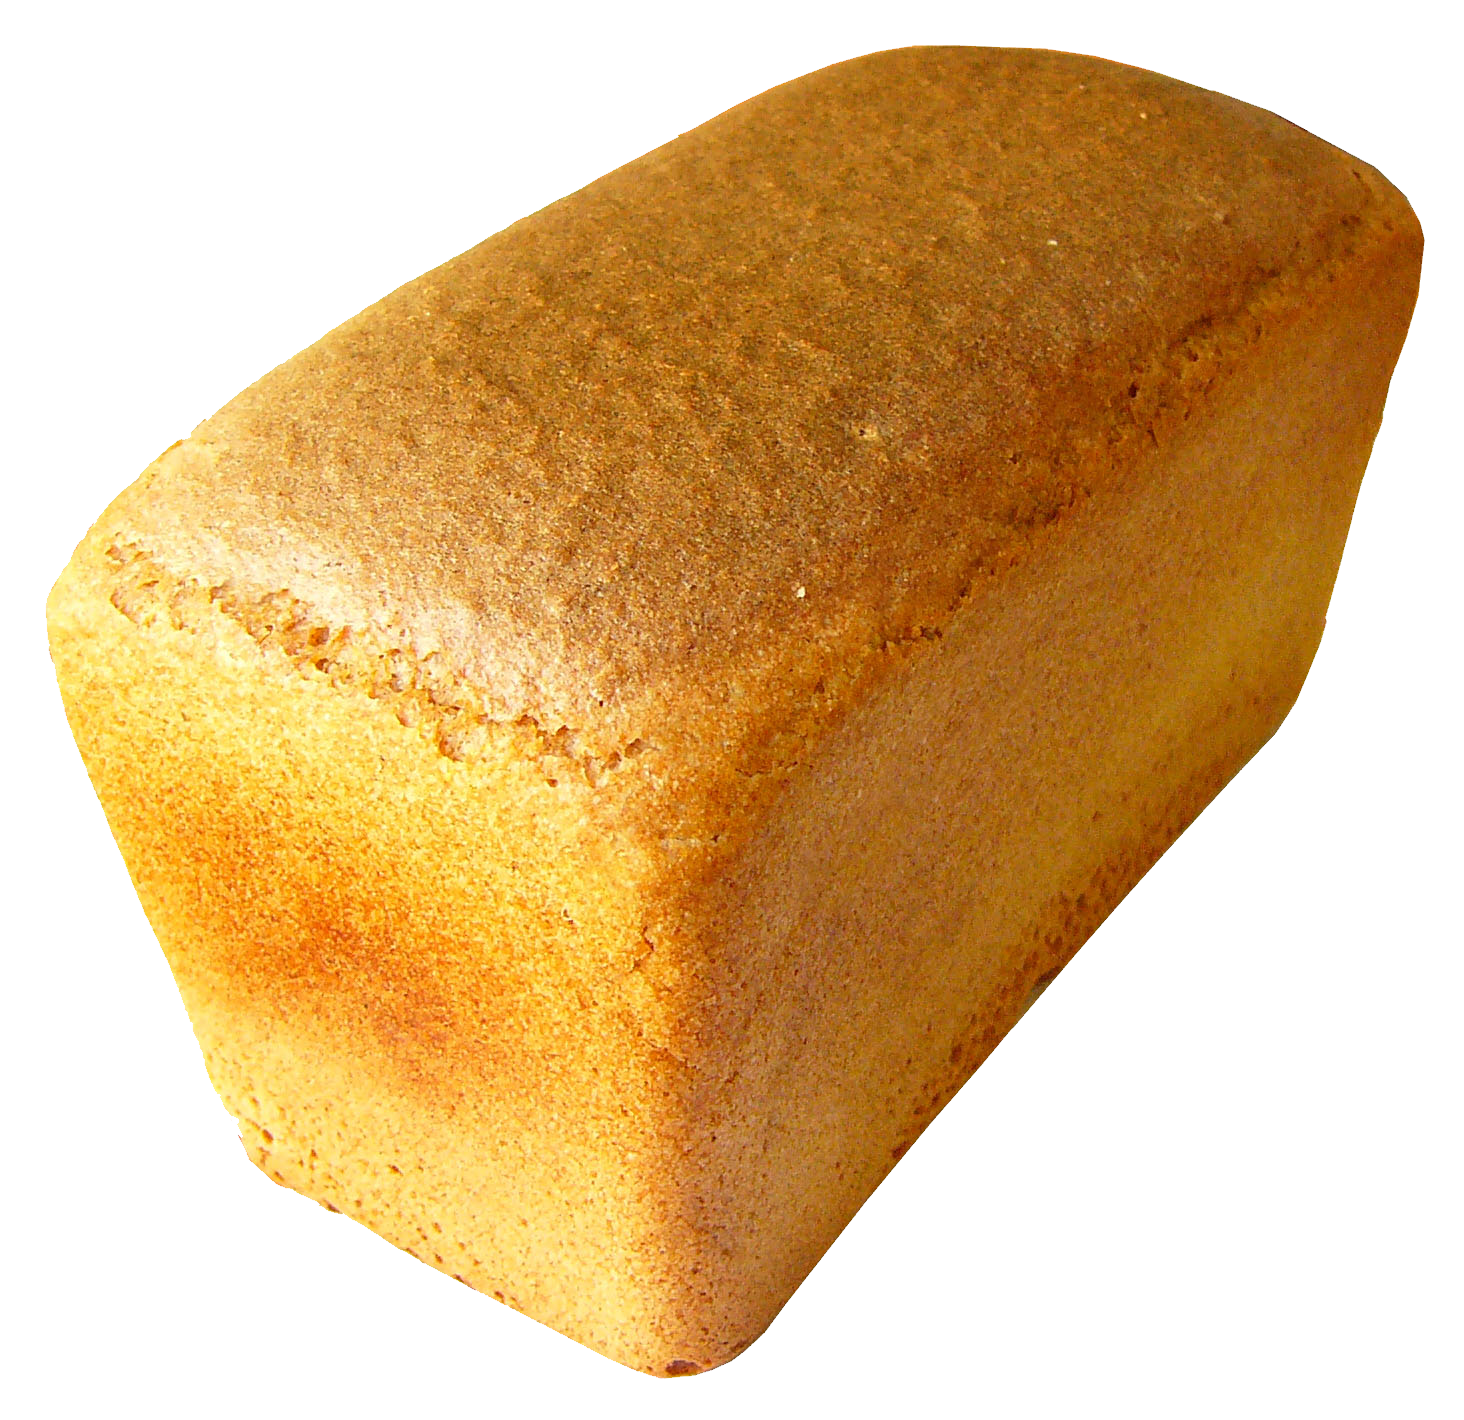 白面包